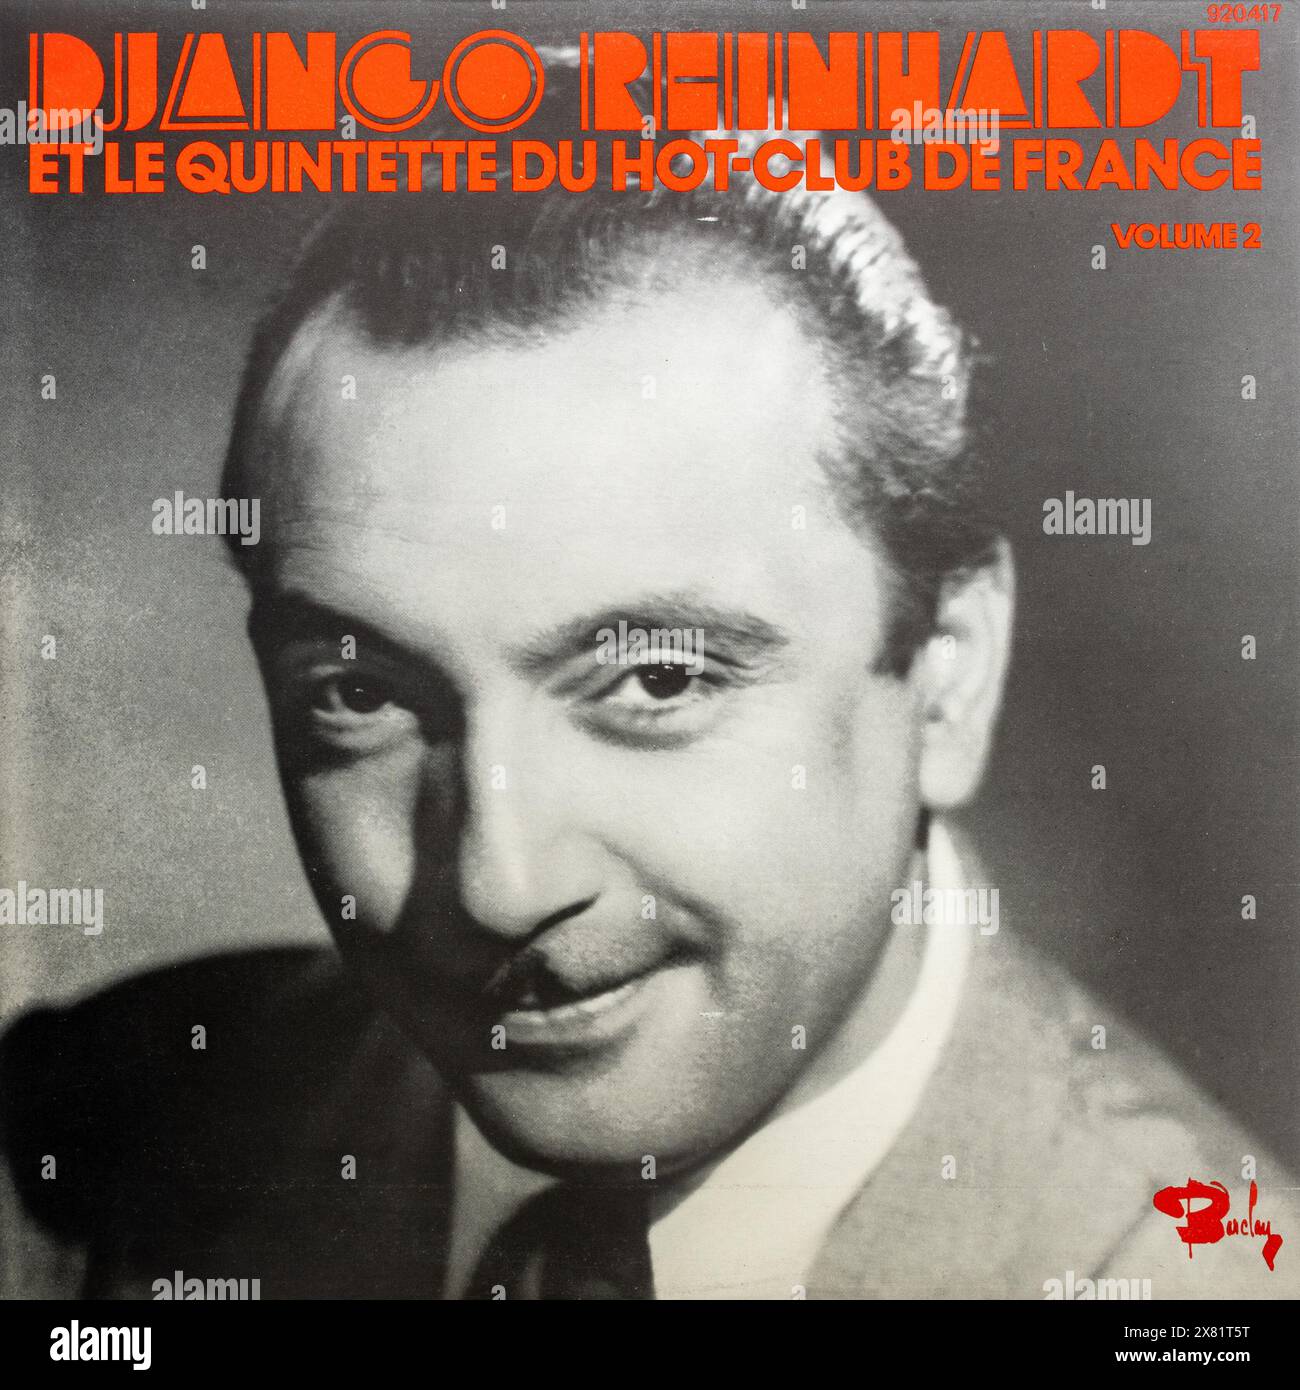 Django Reinhardt et le Quintette du Hot Club de France volume 2 album cover, vinyl LP record Stock Photo